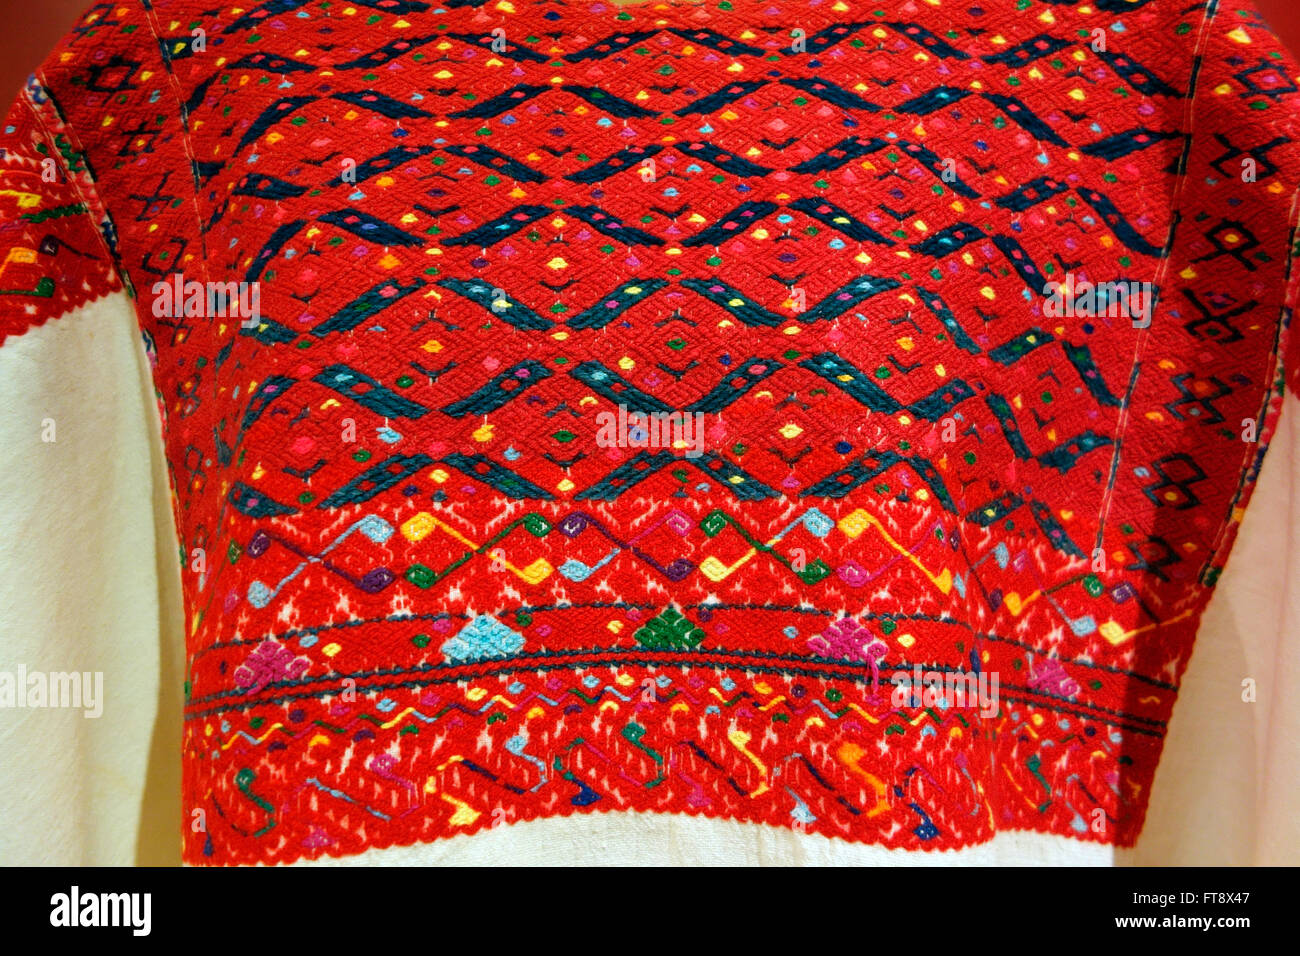 Mayan textile, Centro de Textiles del Mundo Maya, San Cristobal de las Casas, Chiapas, Mexico Stock Photo